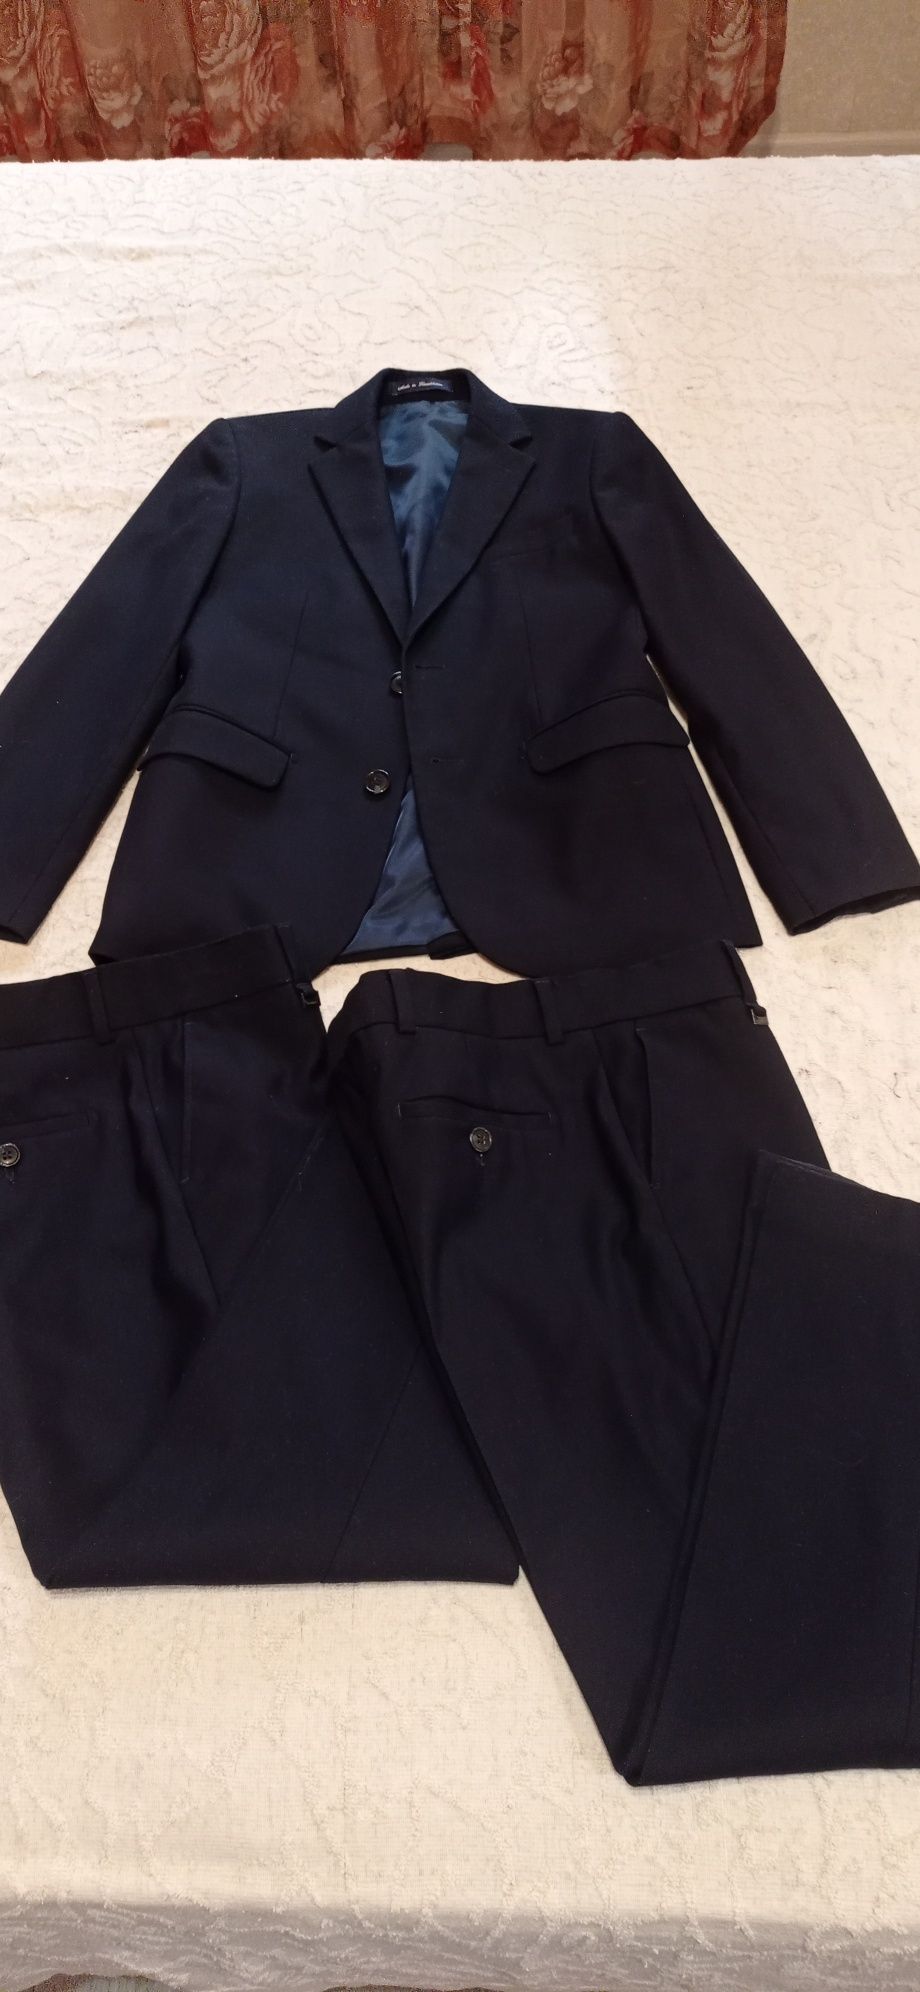 Брюки черные синие жилет рубашки костюм пиджак для мальчика.